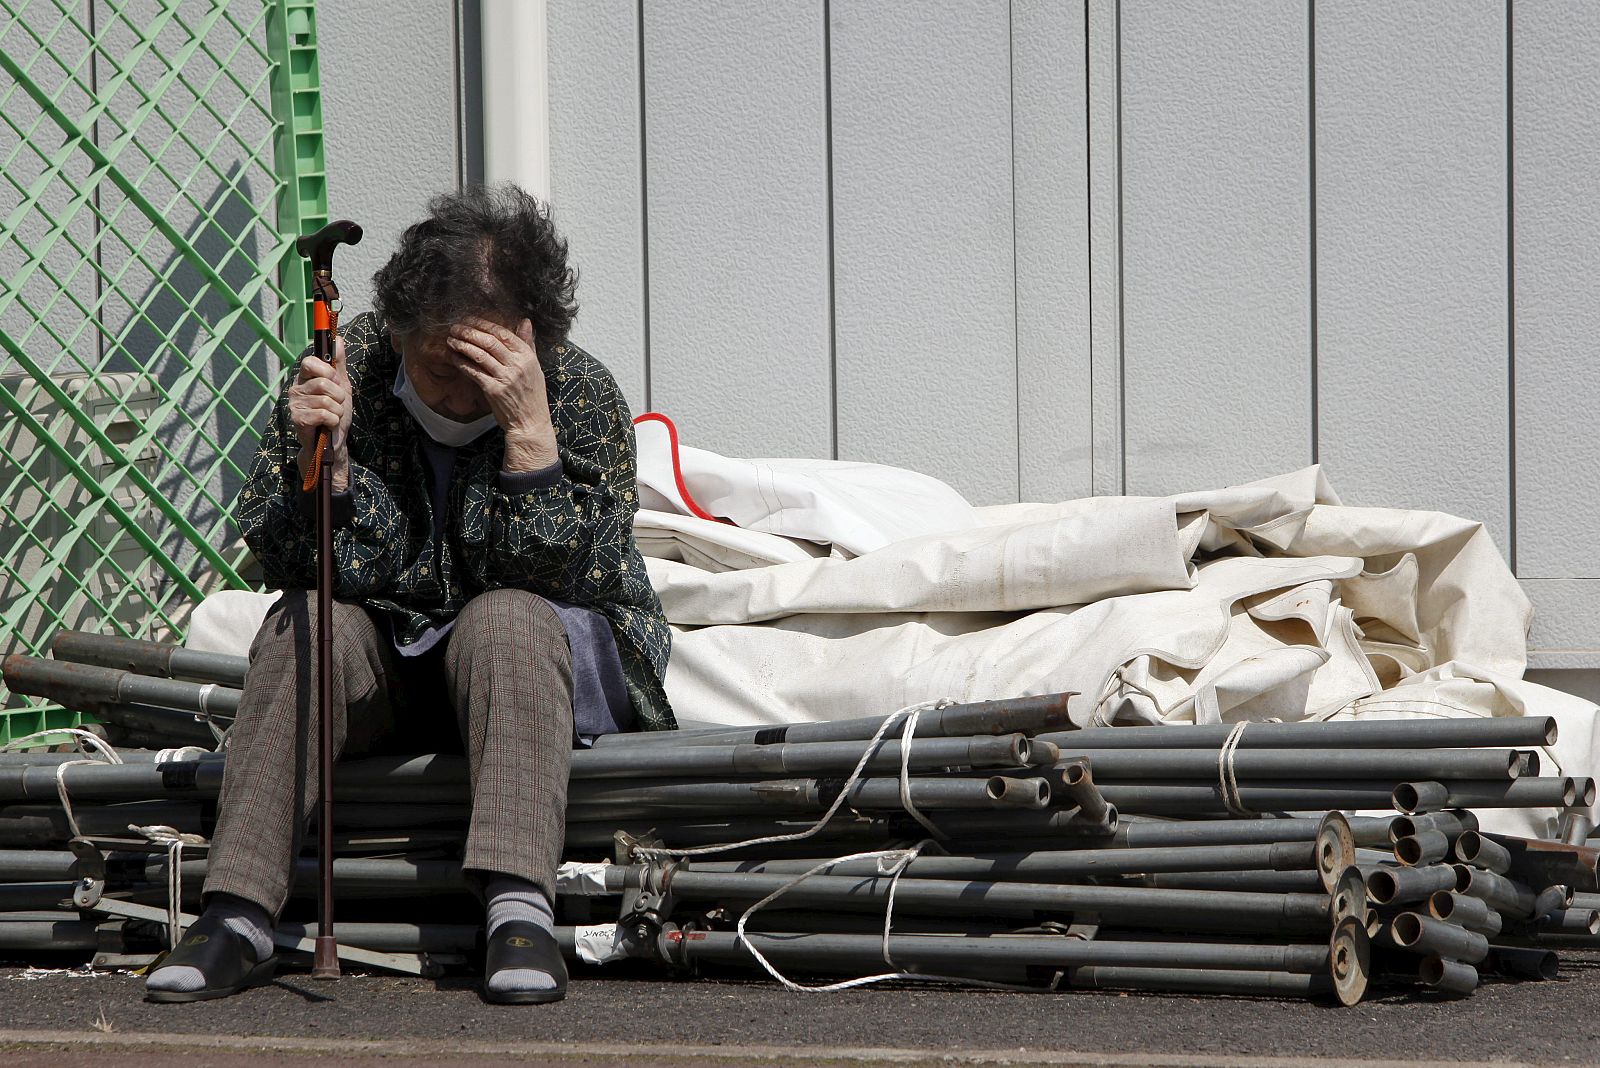 Una anciana descansa en uno de los centros de evacuación habilitados tras el terremoto y posterior tsunami del pasado 11 de marzo de 2011, en Onagawa